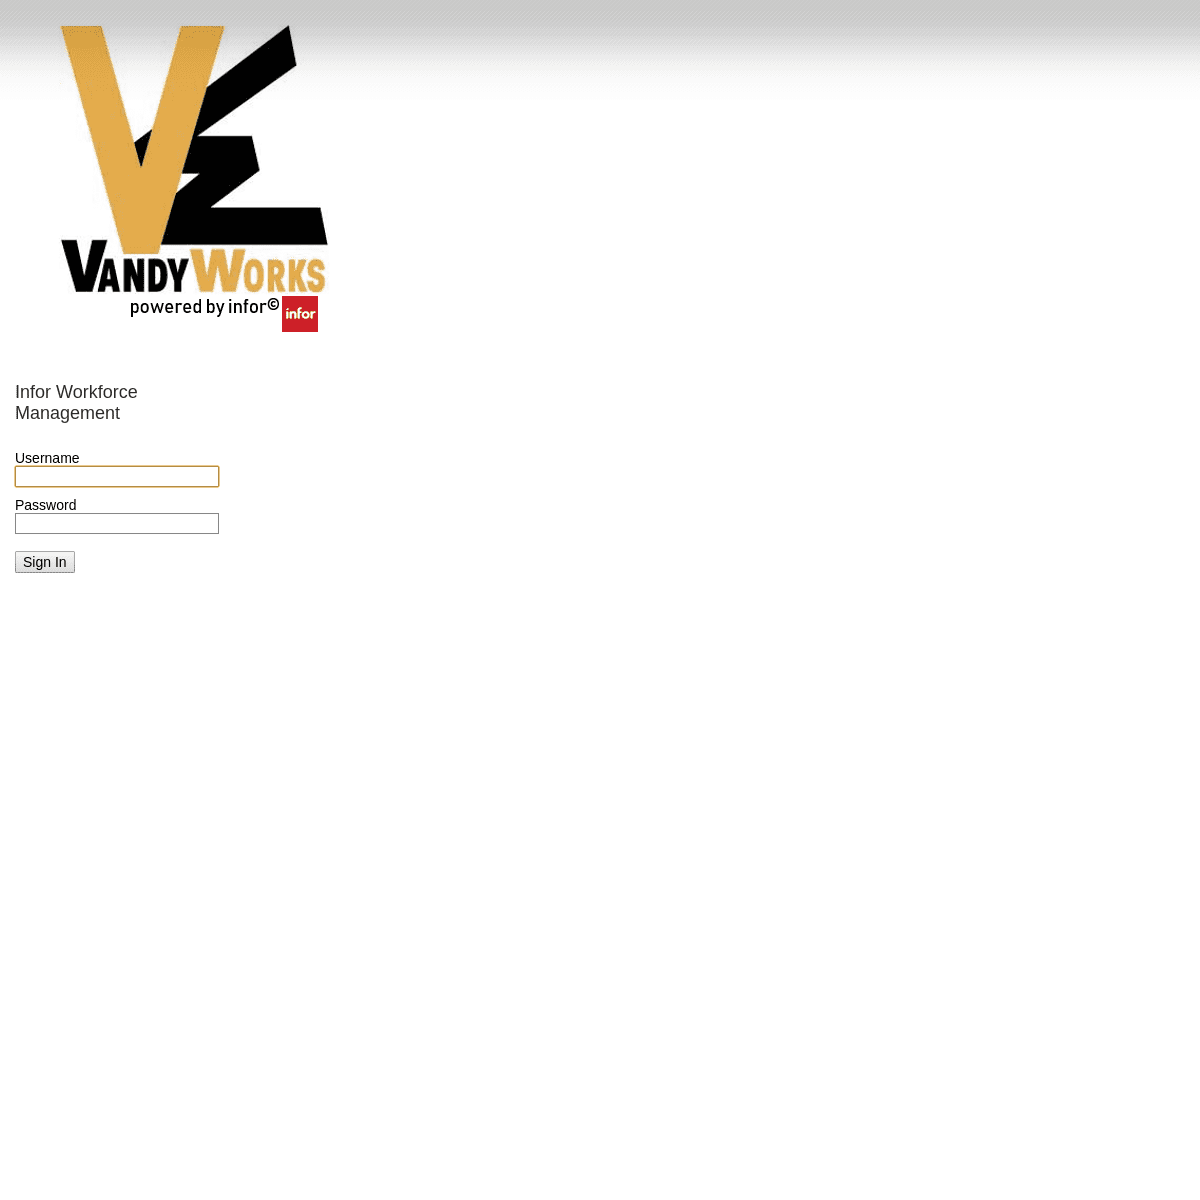 www.vandyworks.com